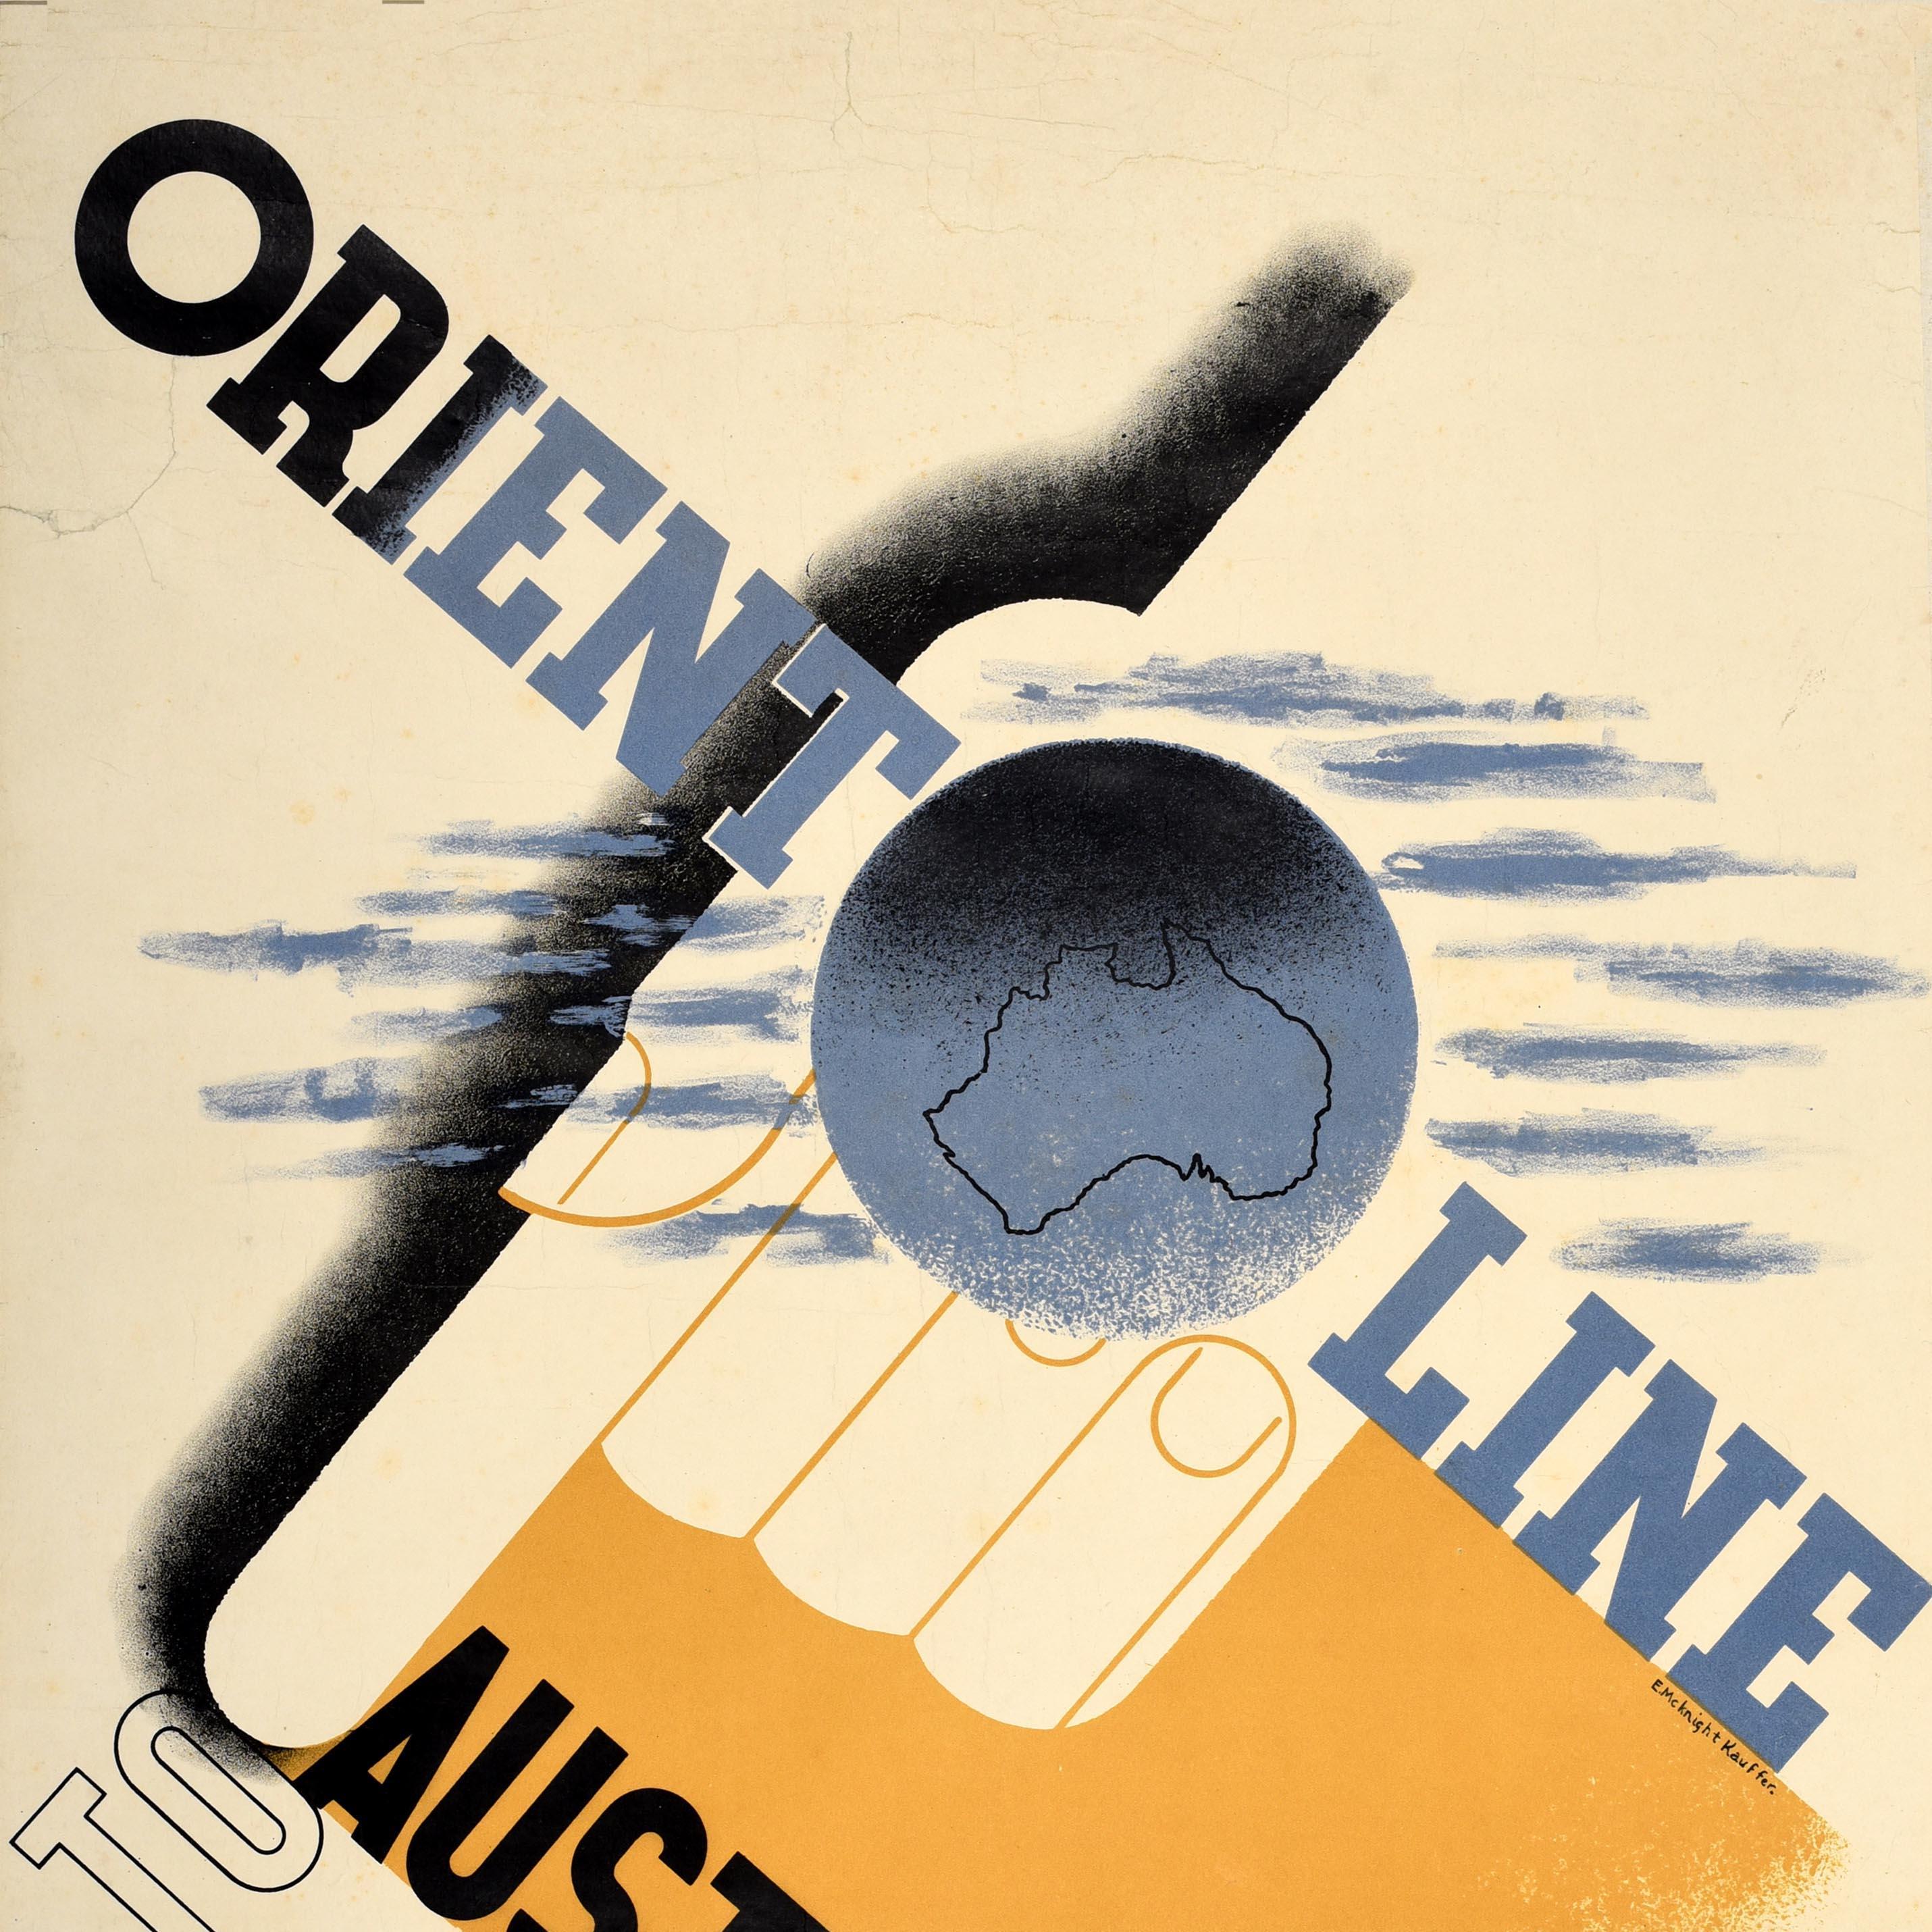 Original Vintage-Reiseplakat Orient Line, Australien, McKnight Kauffer, Art déco, Art déco (Beige), Print, von Edward McKnight Kauffer